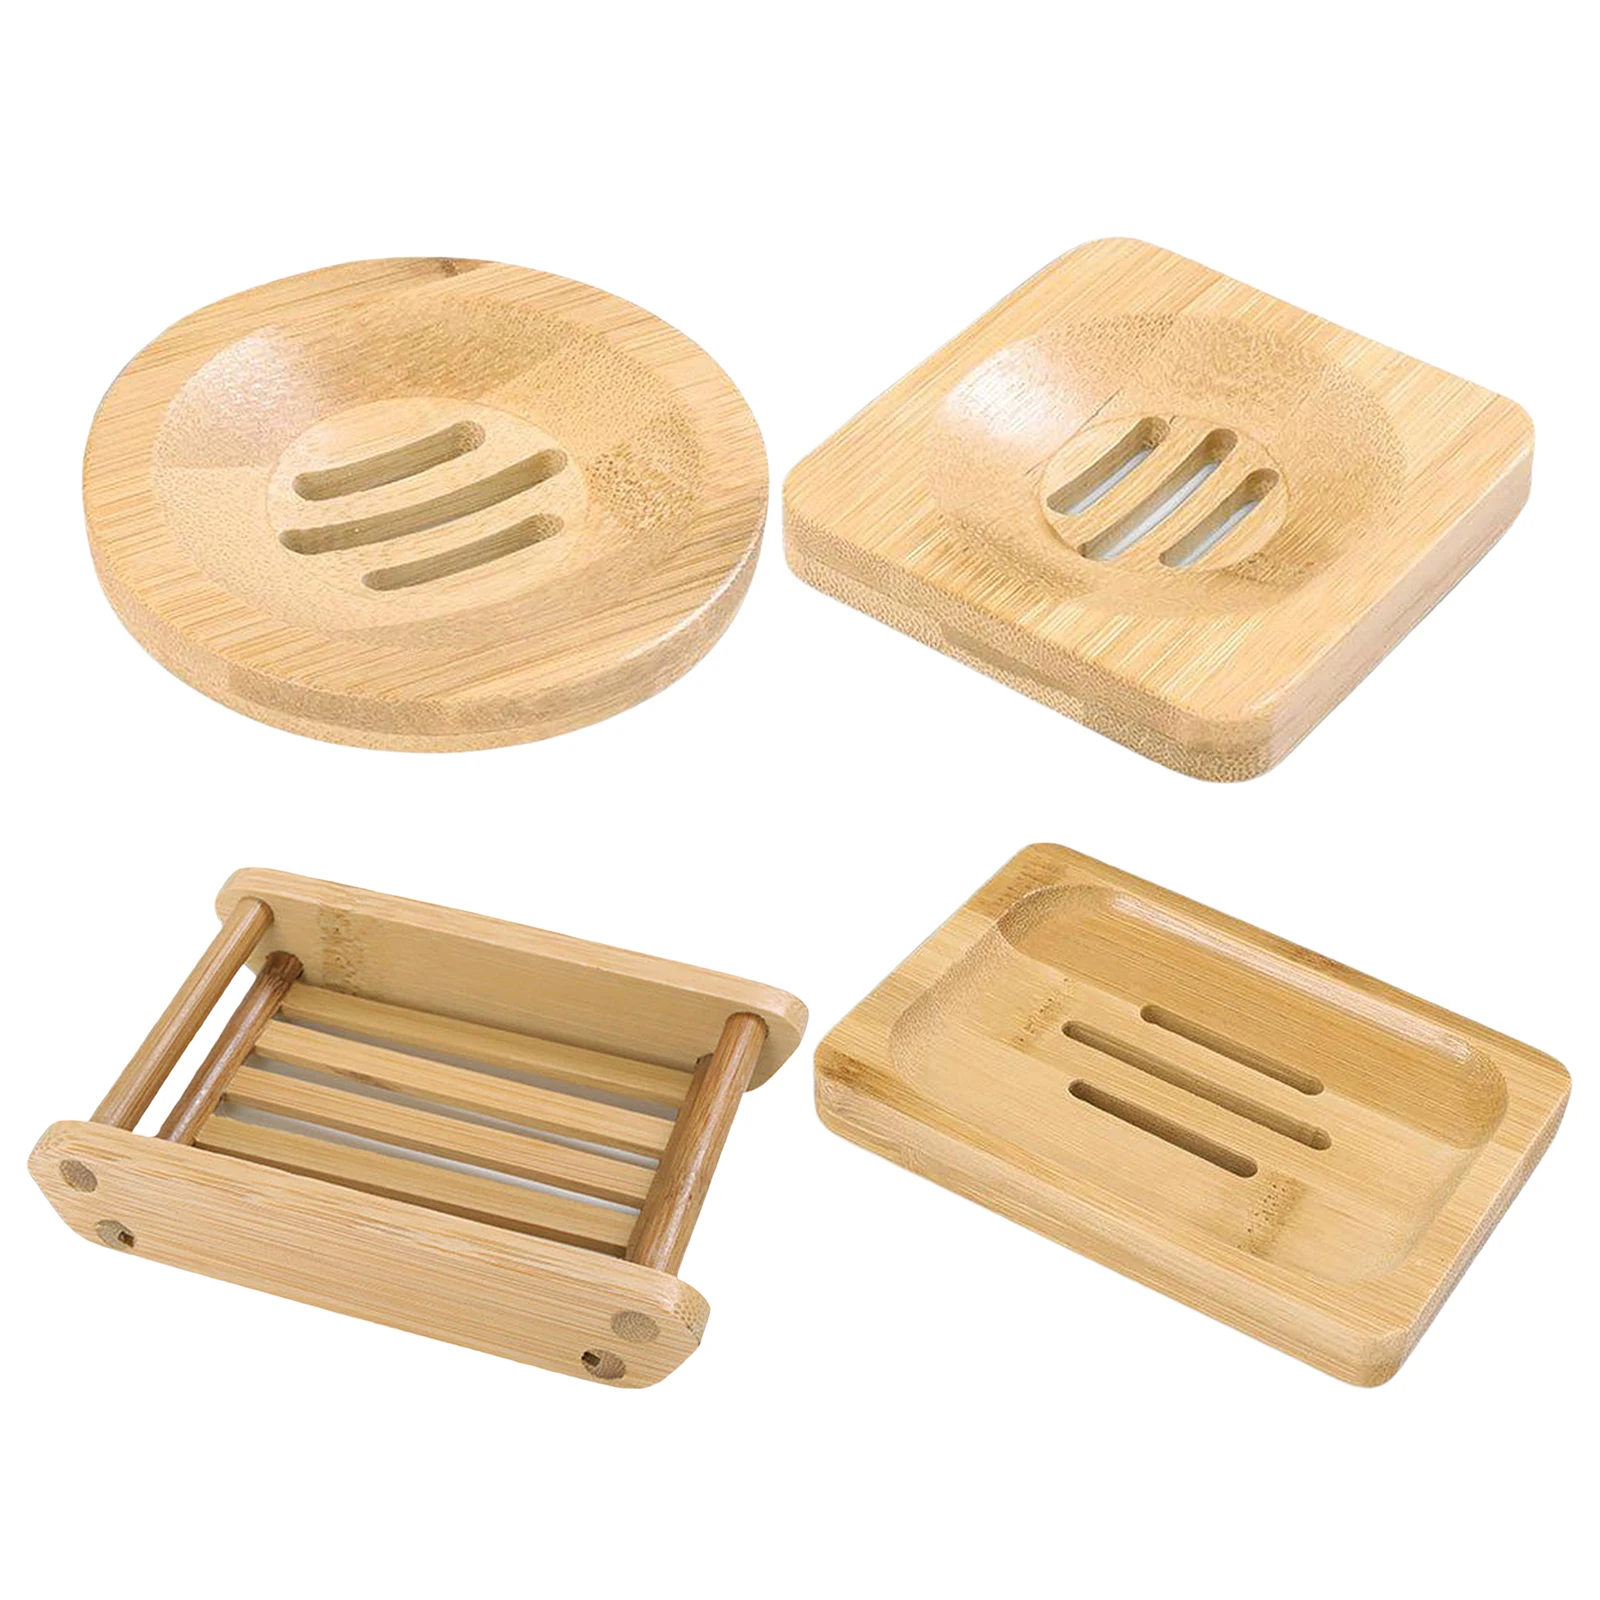 

Деревянный натуральный бамбук мыло поднос для посуды держатель для хранения мыло стеллаж для выставки товаров плиты контейнер Ванная комн...